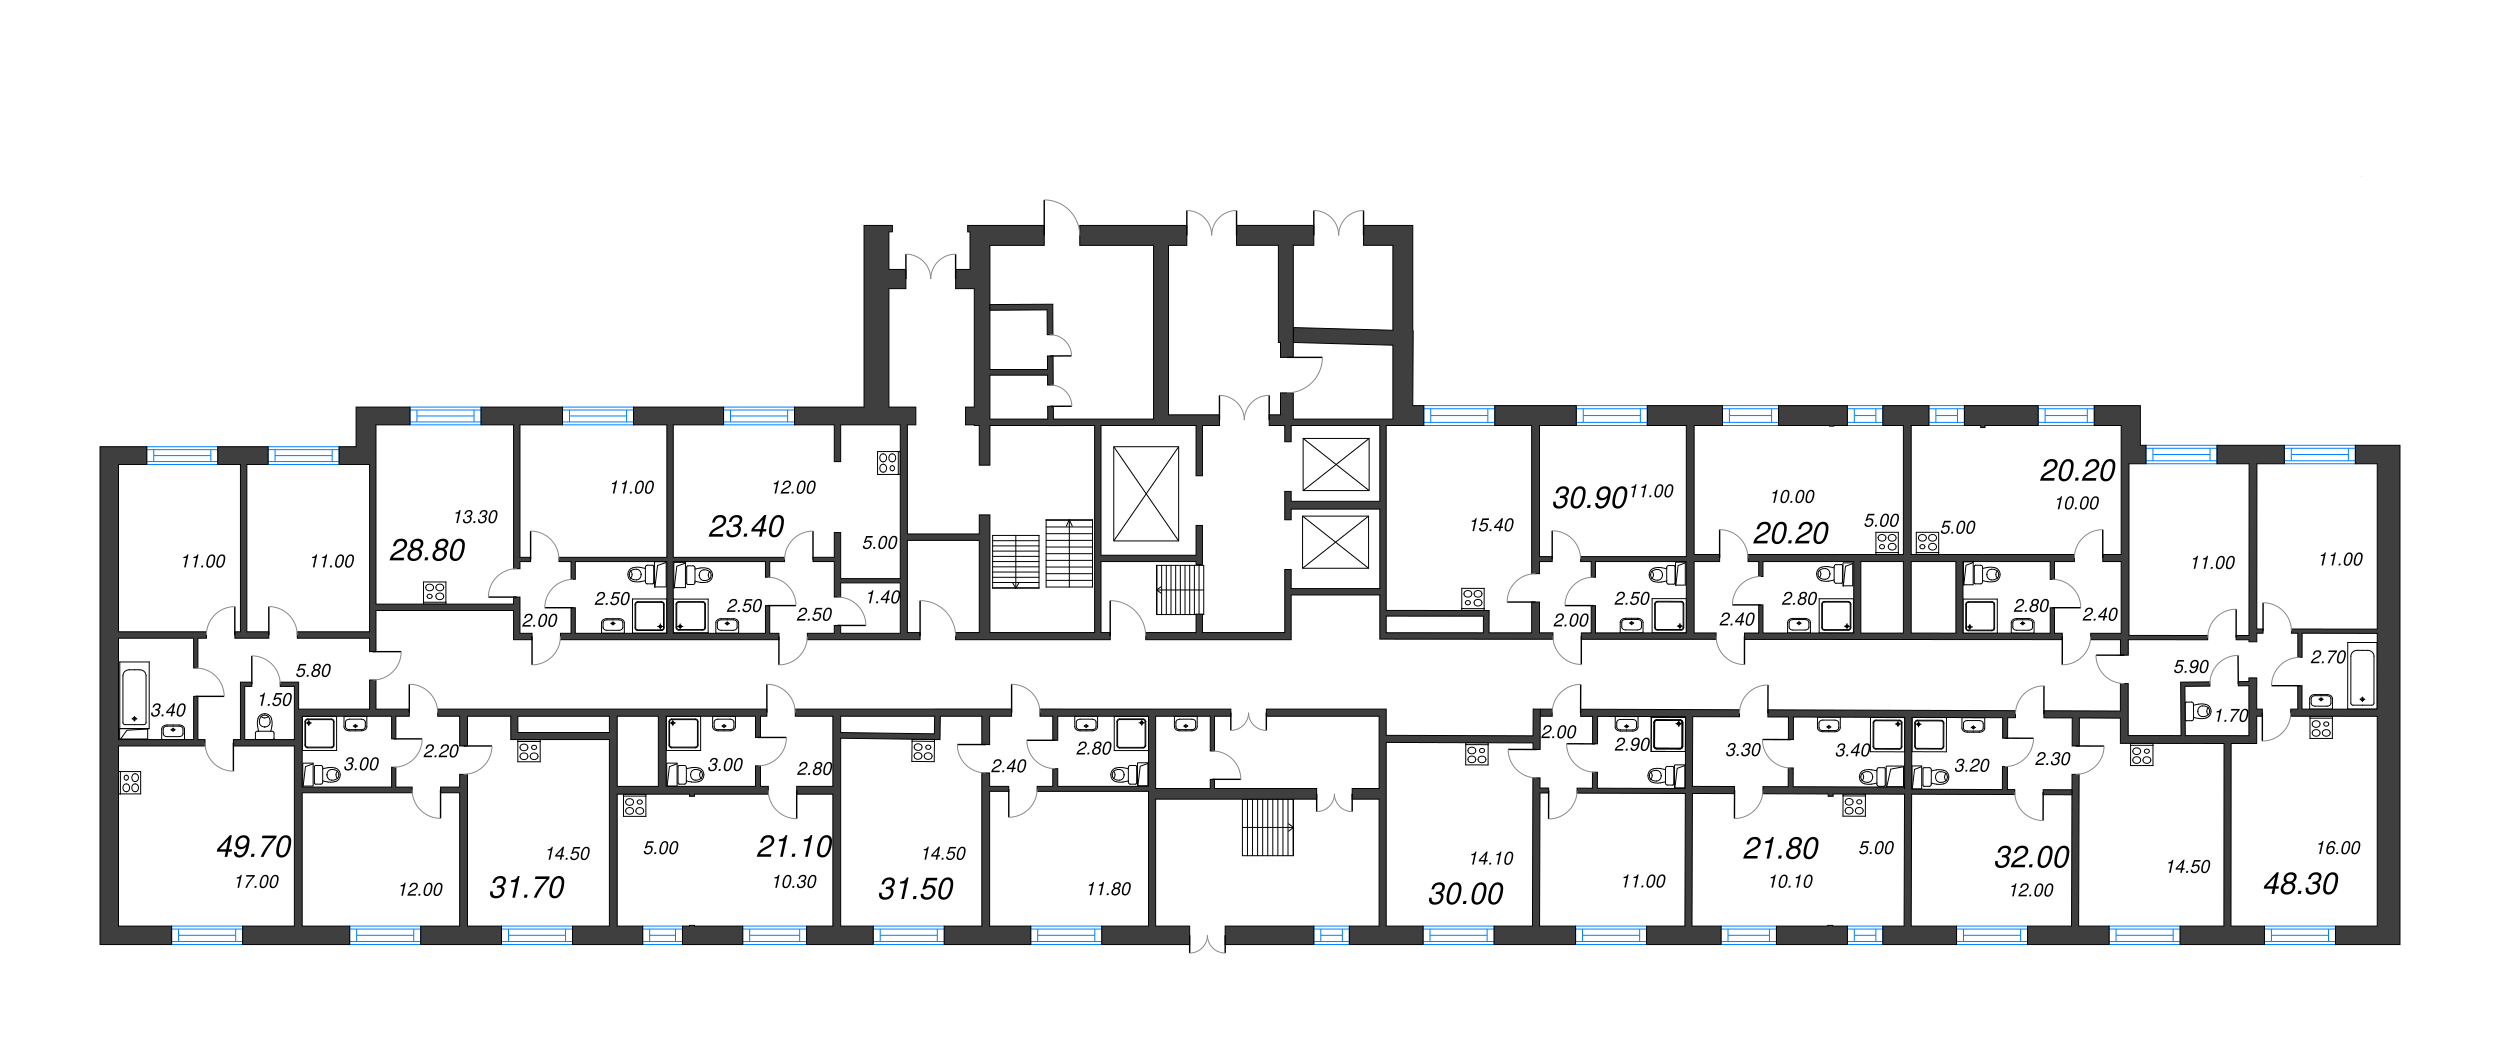 1-комнатная квартира, 28.8 м² в ЖК "ЛСР. Ржевский парк" - планировка этажа